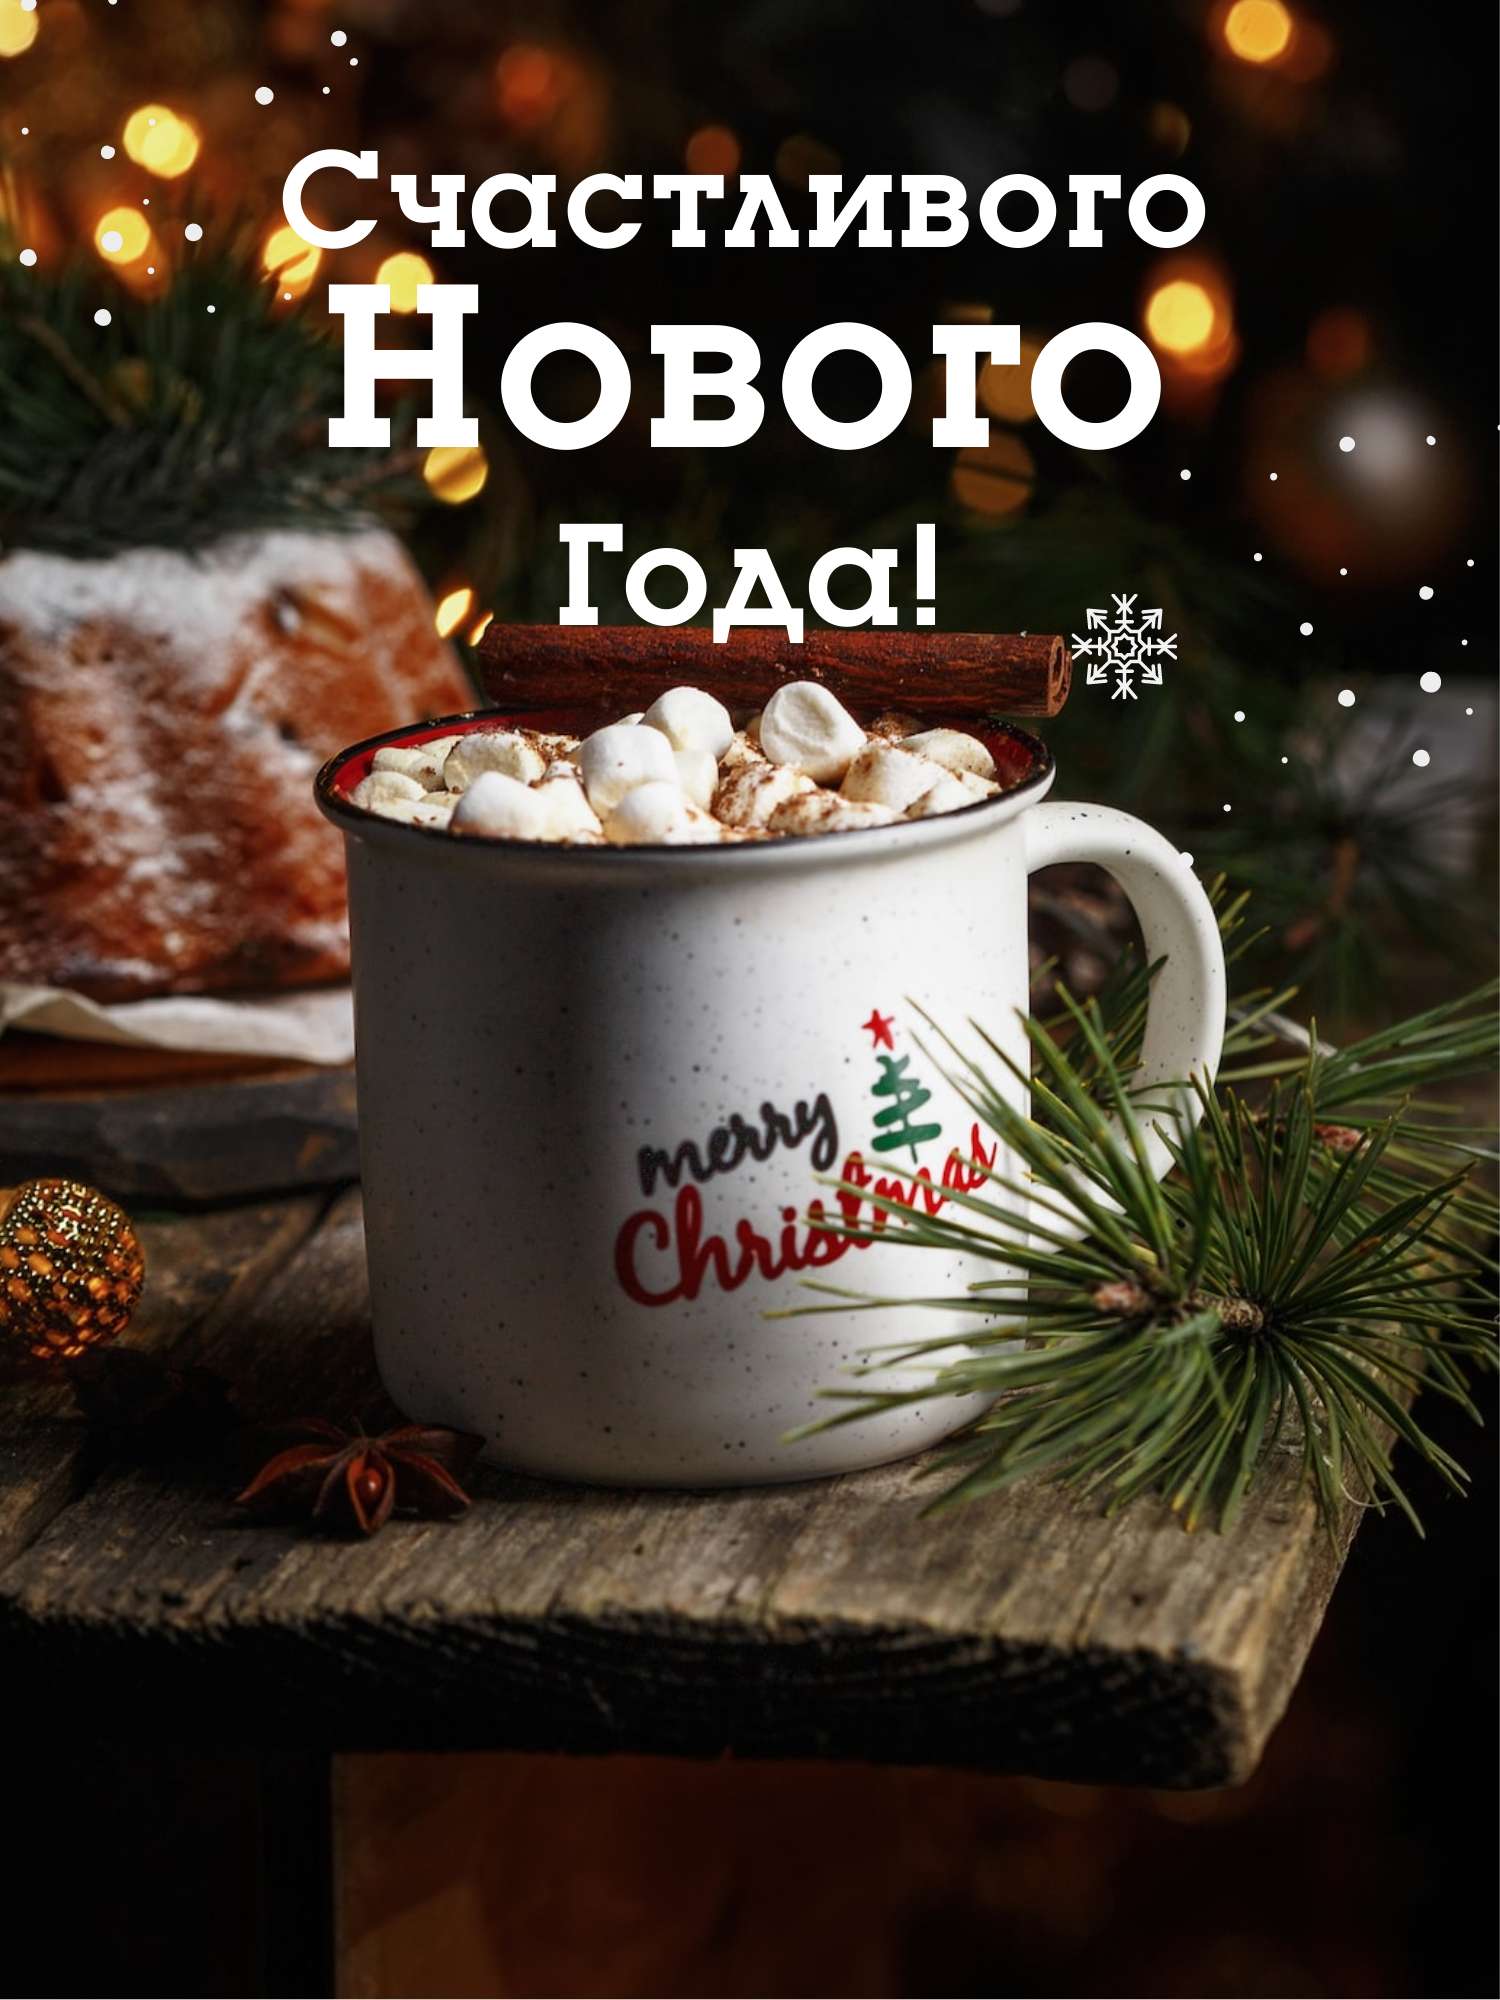 Новогодняя открытка с нежными декоративными элементами и чашкой какао с зефирками